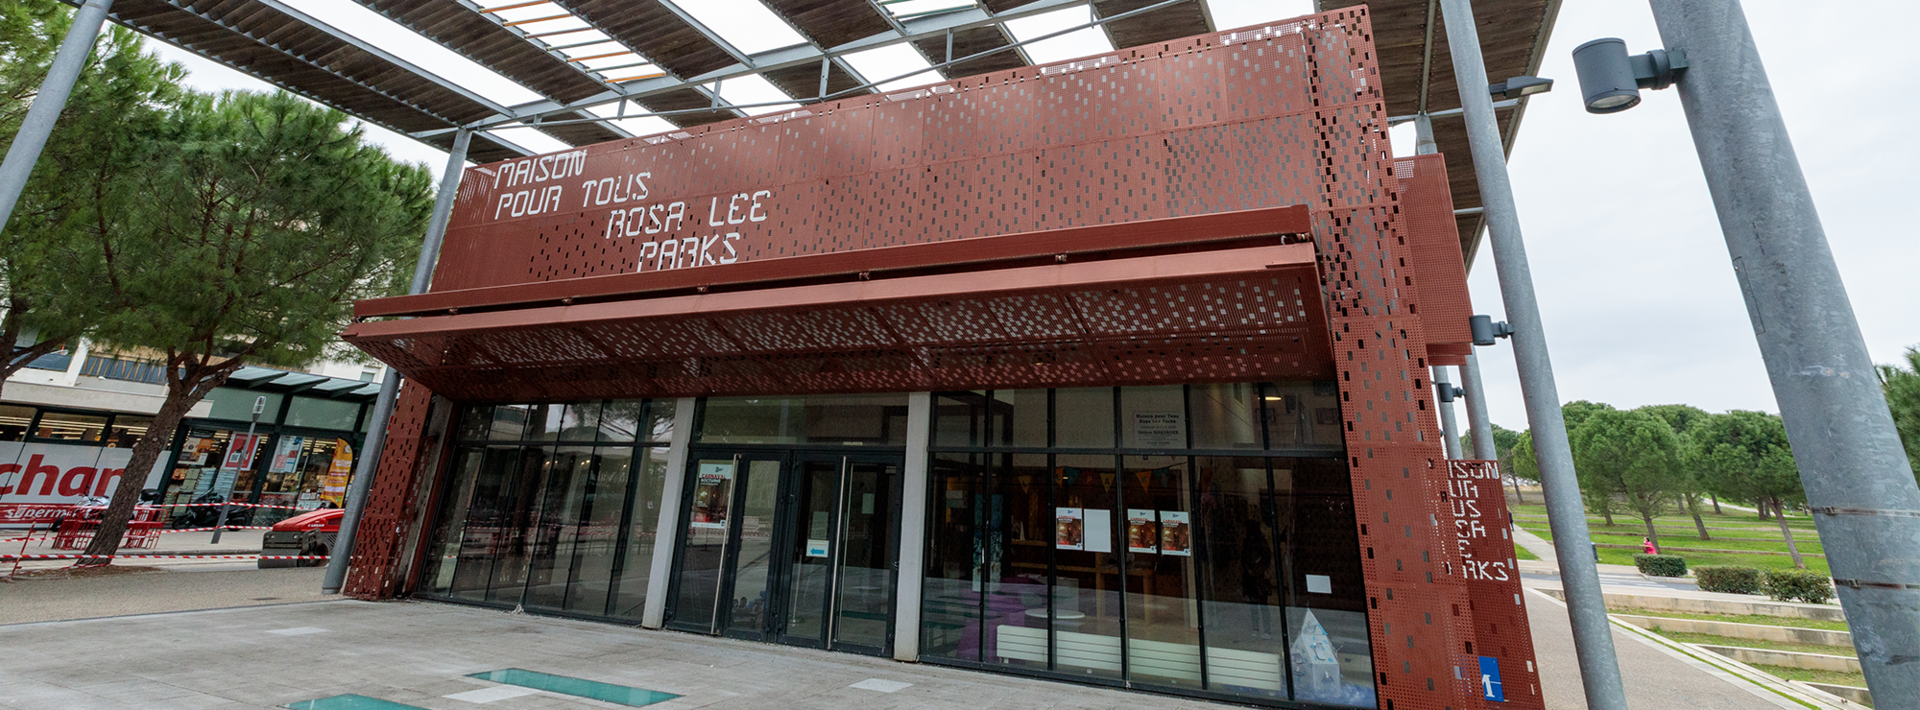 Lecture, écriture et théâtre pour tous - Ville de Nice